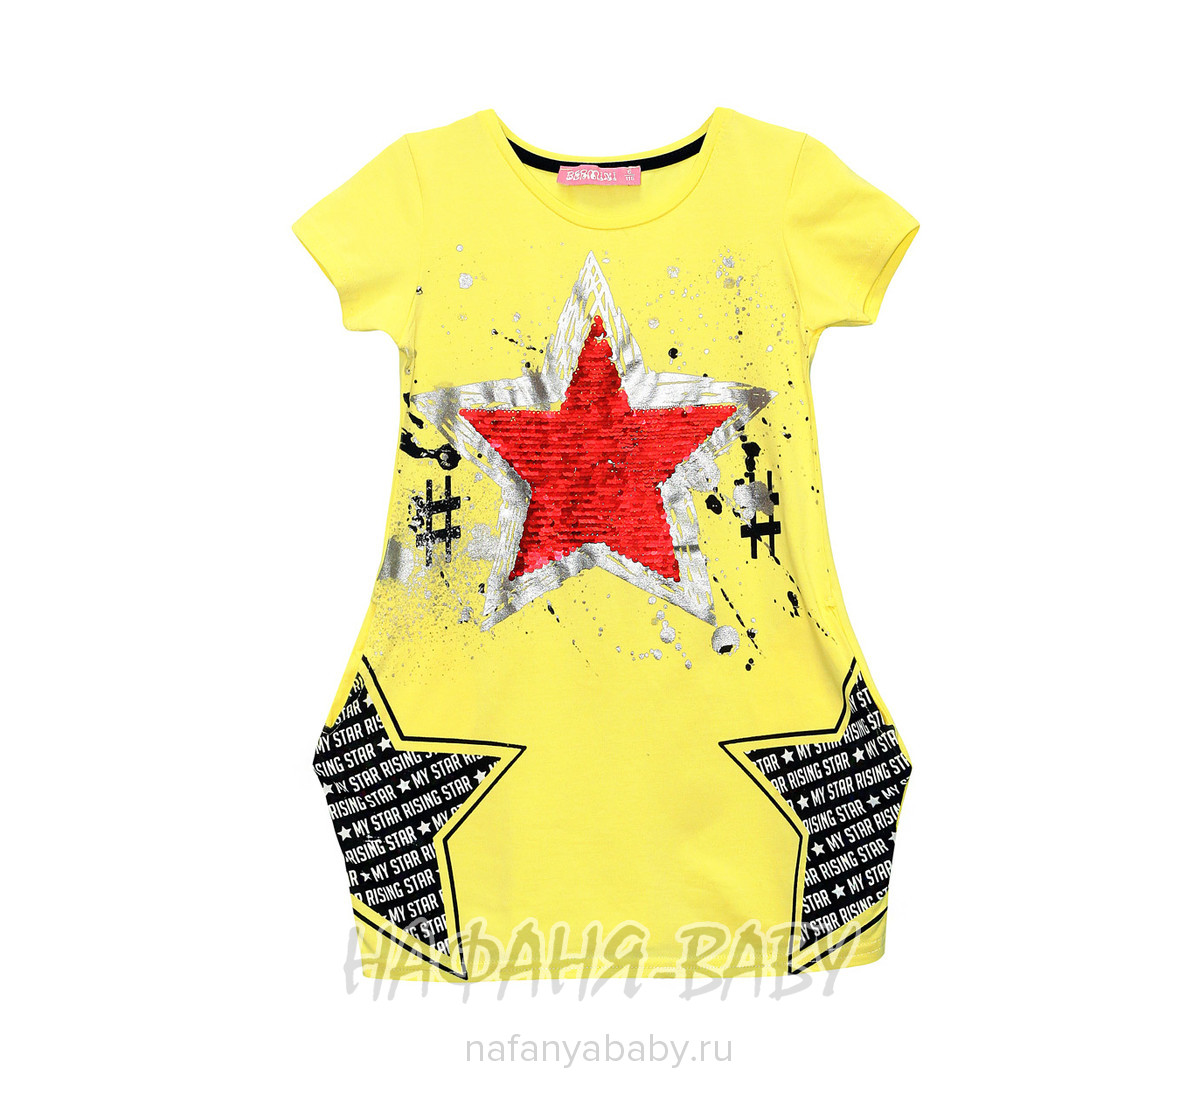 Детское платье BERMINI, купить в интернет магазине Нафаня. арт: 6405.